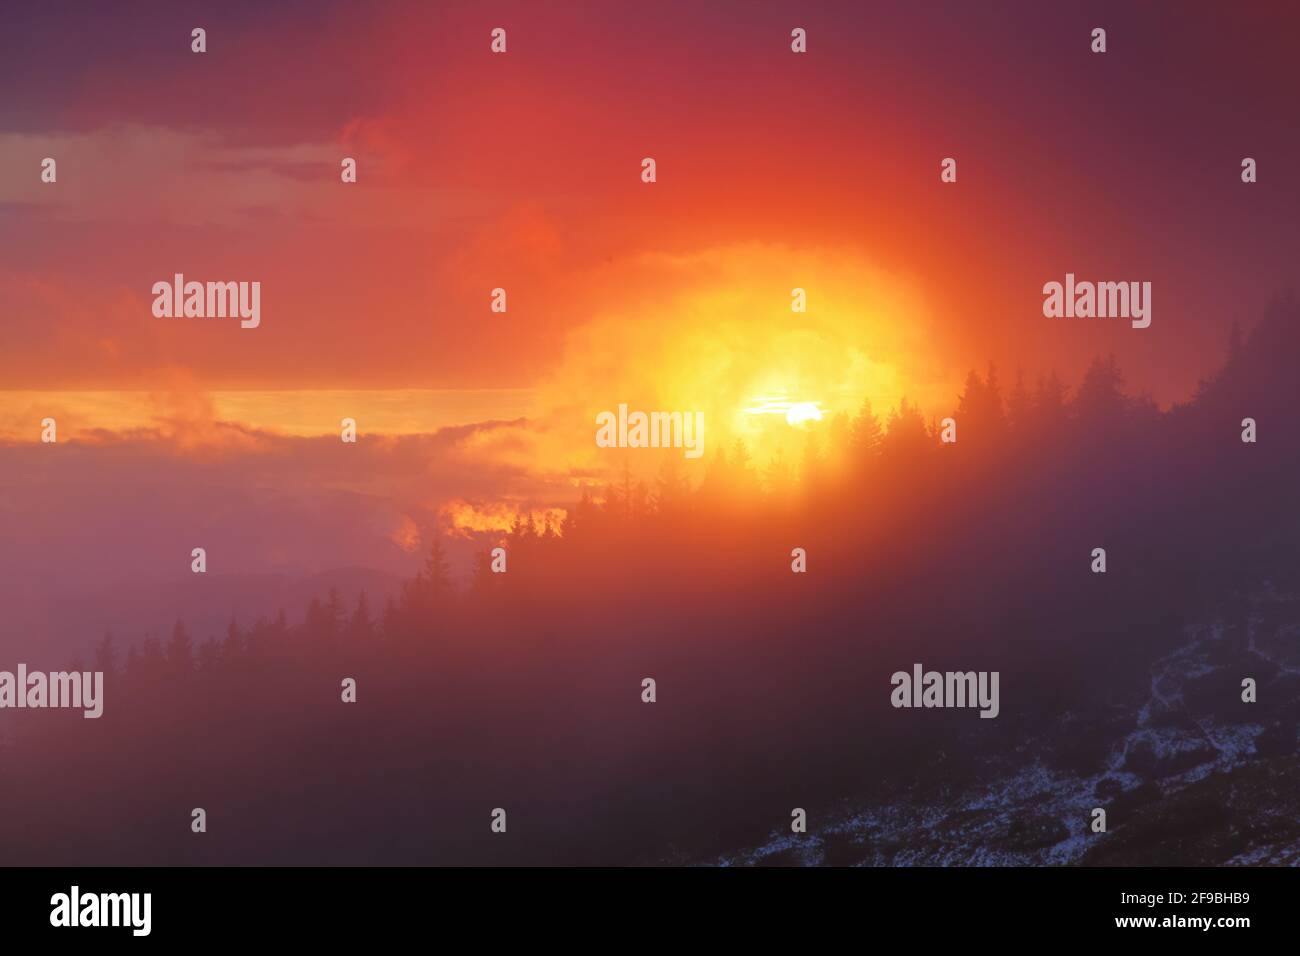 Landschaft mit schönem Sonnenuntergang, bewölktem Himmel und orangefarbenem Horizont. Panoramablick. Berg Silhouette am Abend. Platz für Text kopieren. Stockfoto